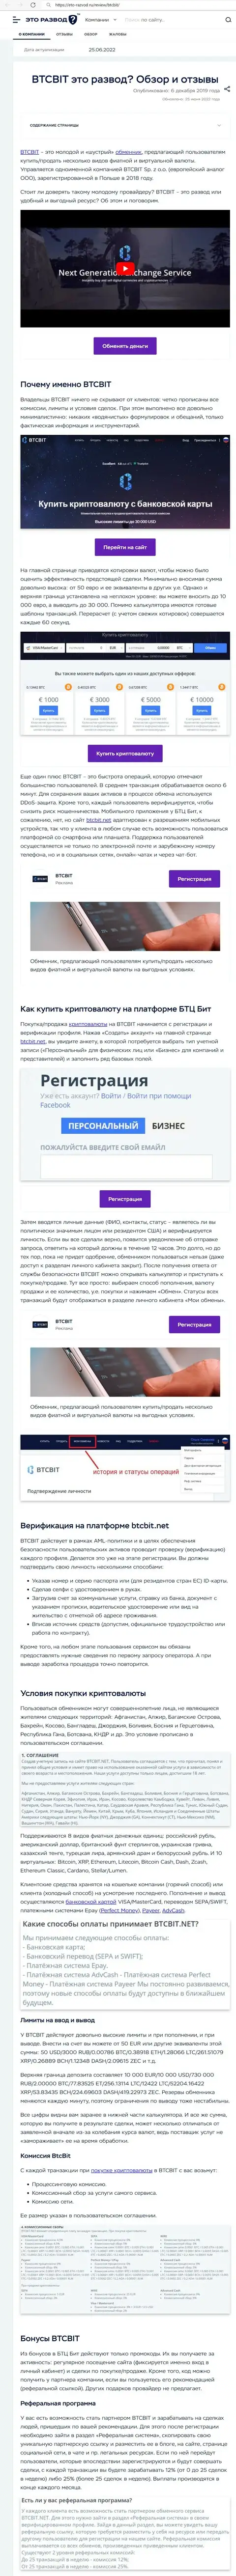 Обзор и условия для предоставления услуг обменного пункта БТКБит в обзоре на сайте eto-razvod ru